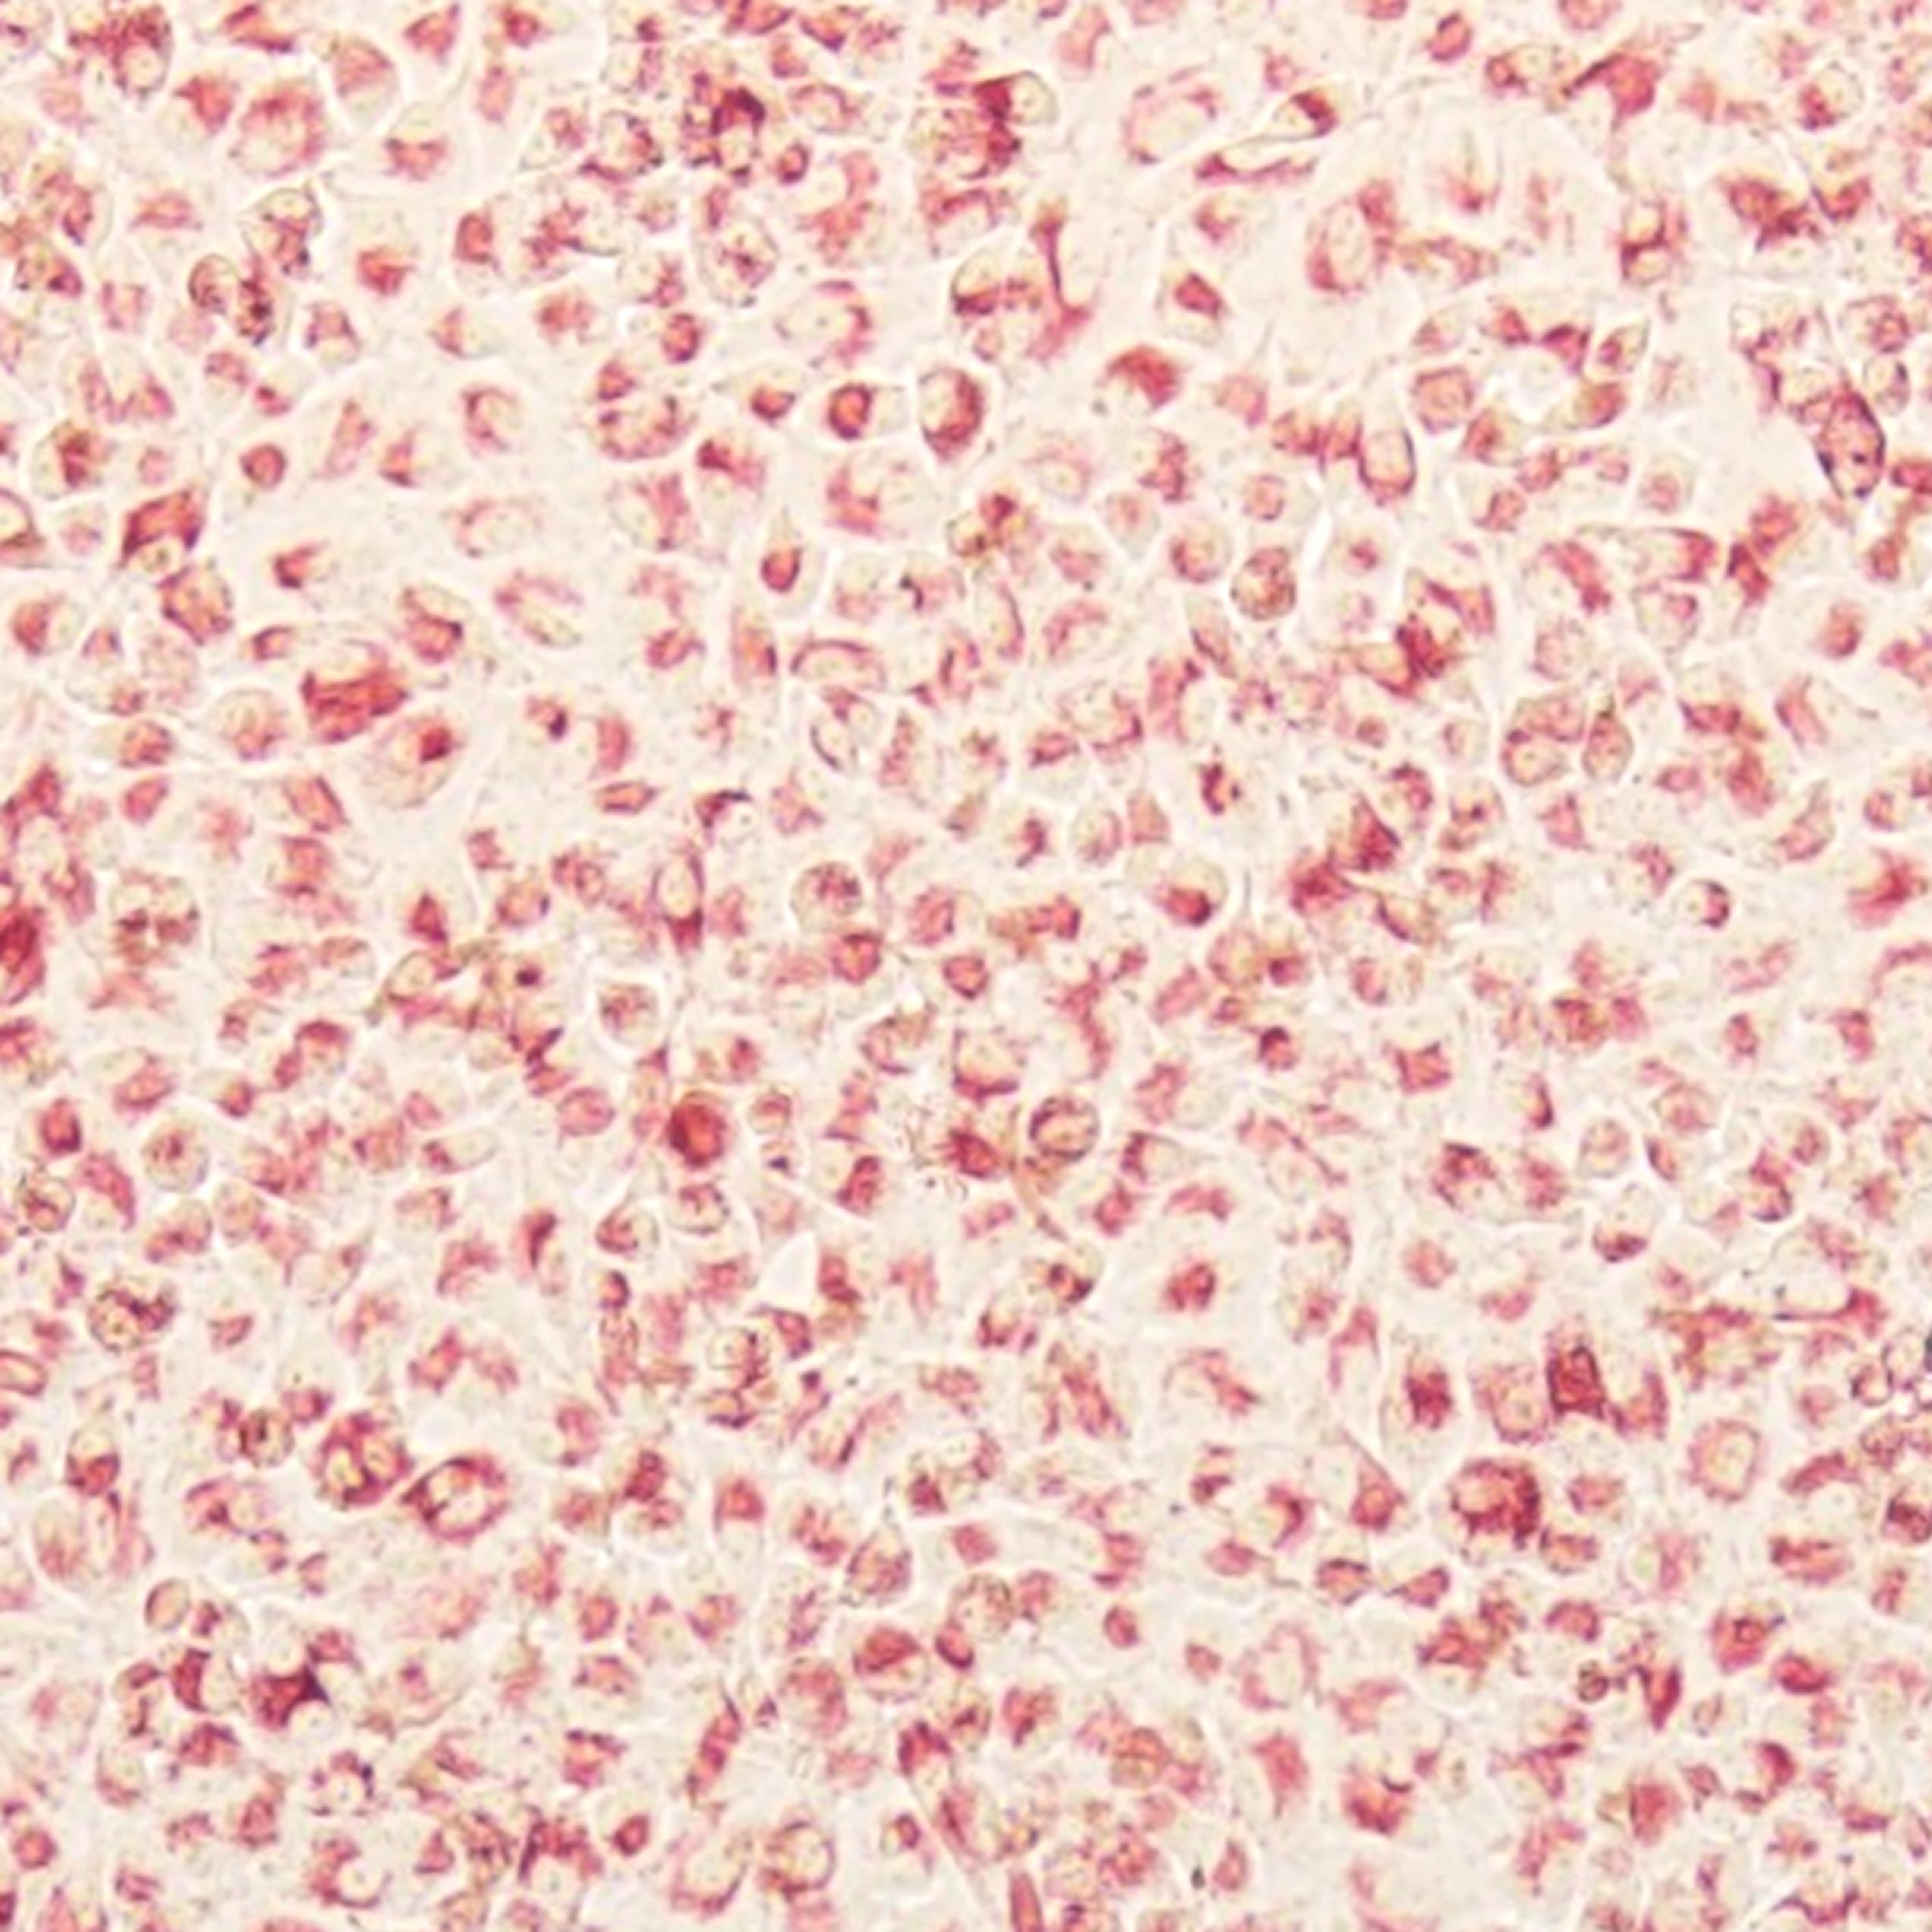 细胞增殖及细胞毒性检测试剂盒（中性红法）